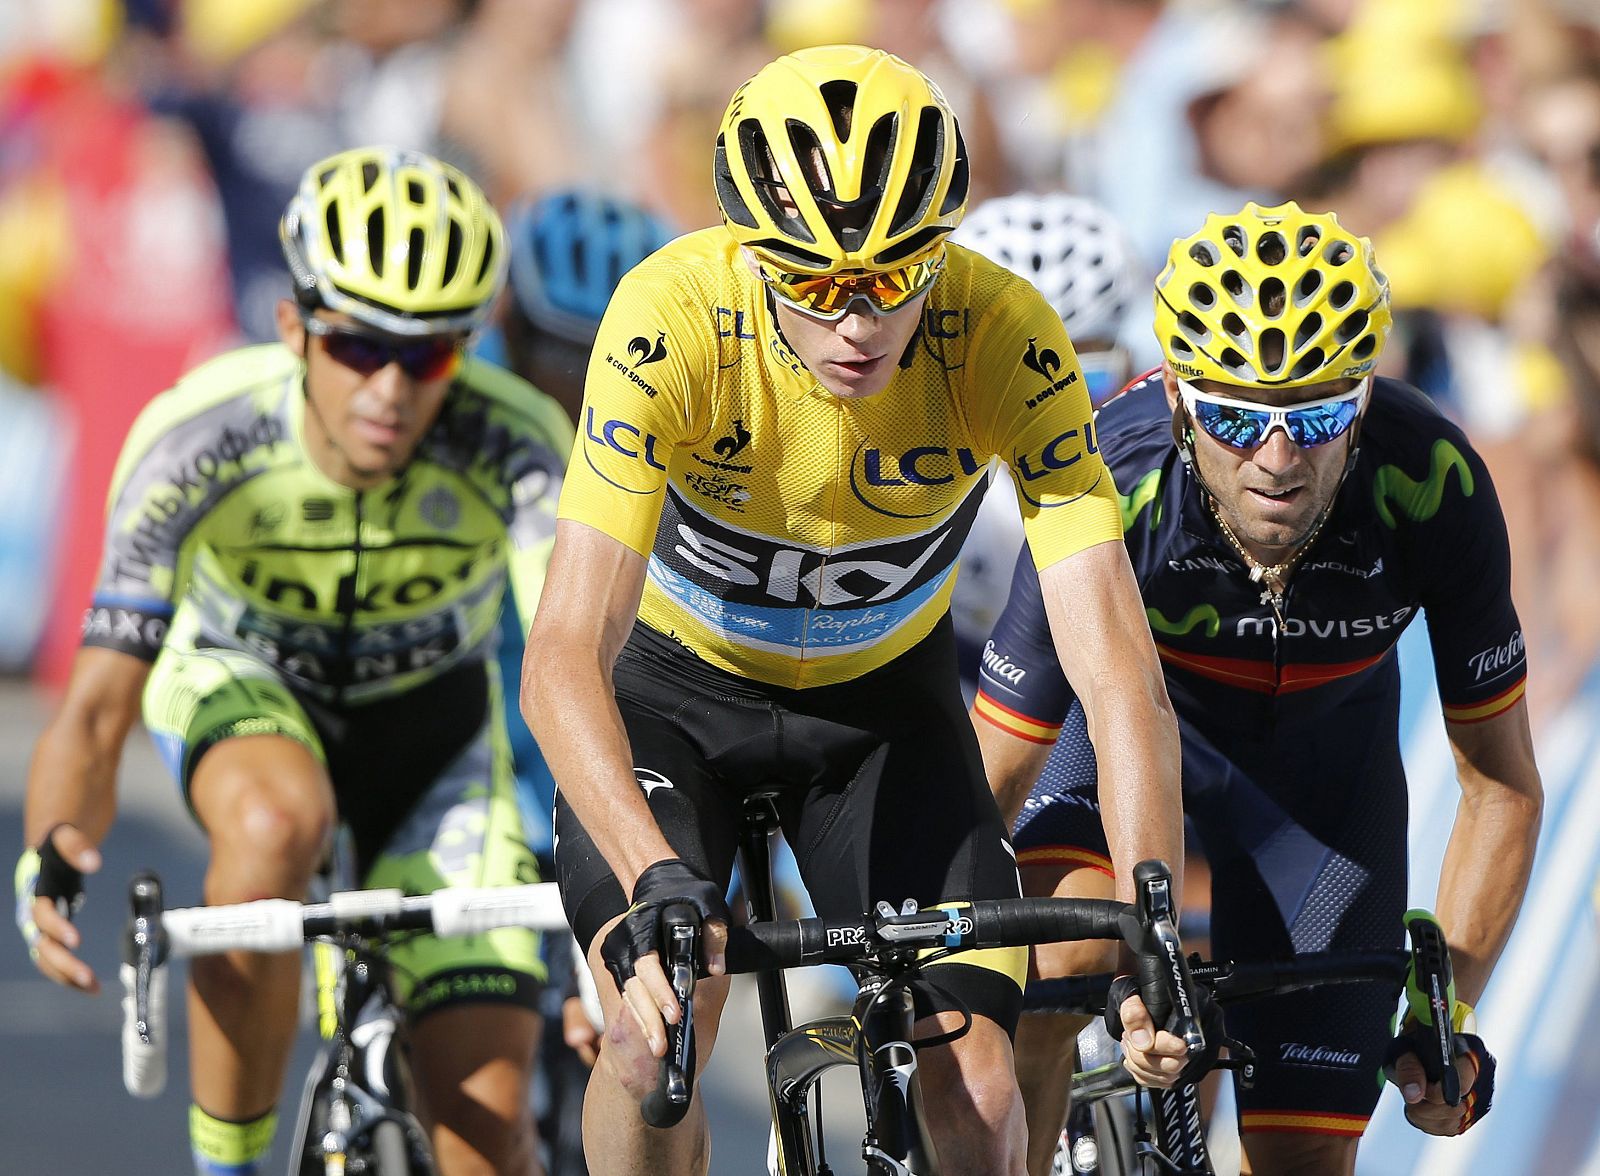 Imagen de Froome (c), Contador (i) y Valverde (d) durante el Tour de Francia 2015.